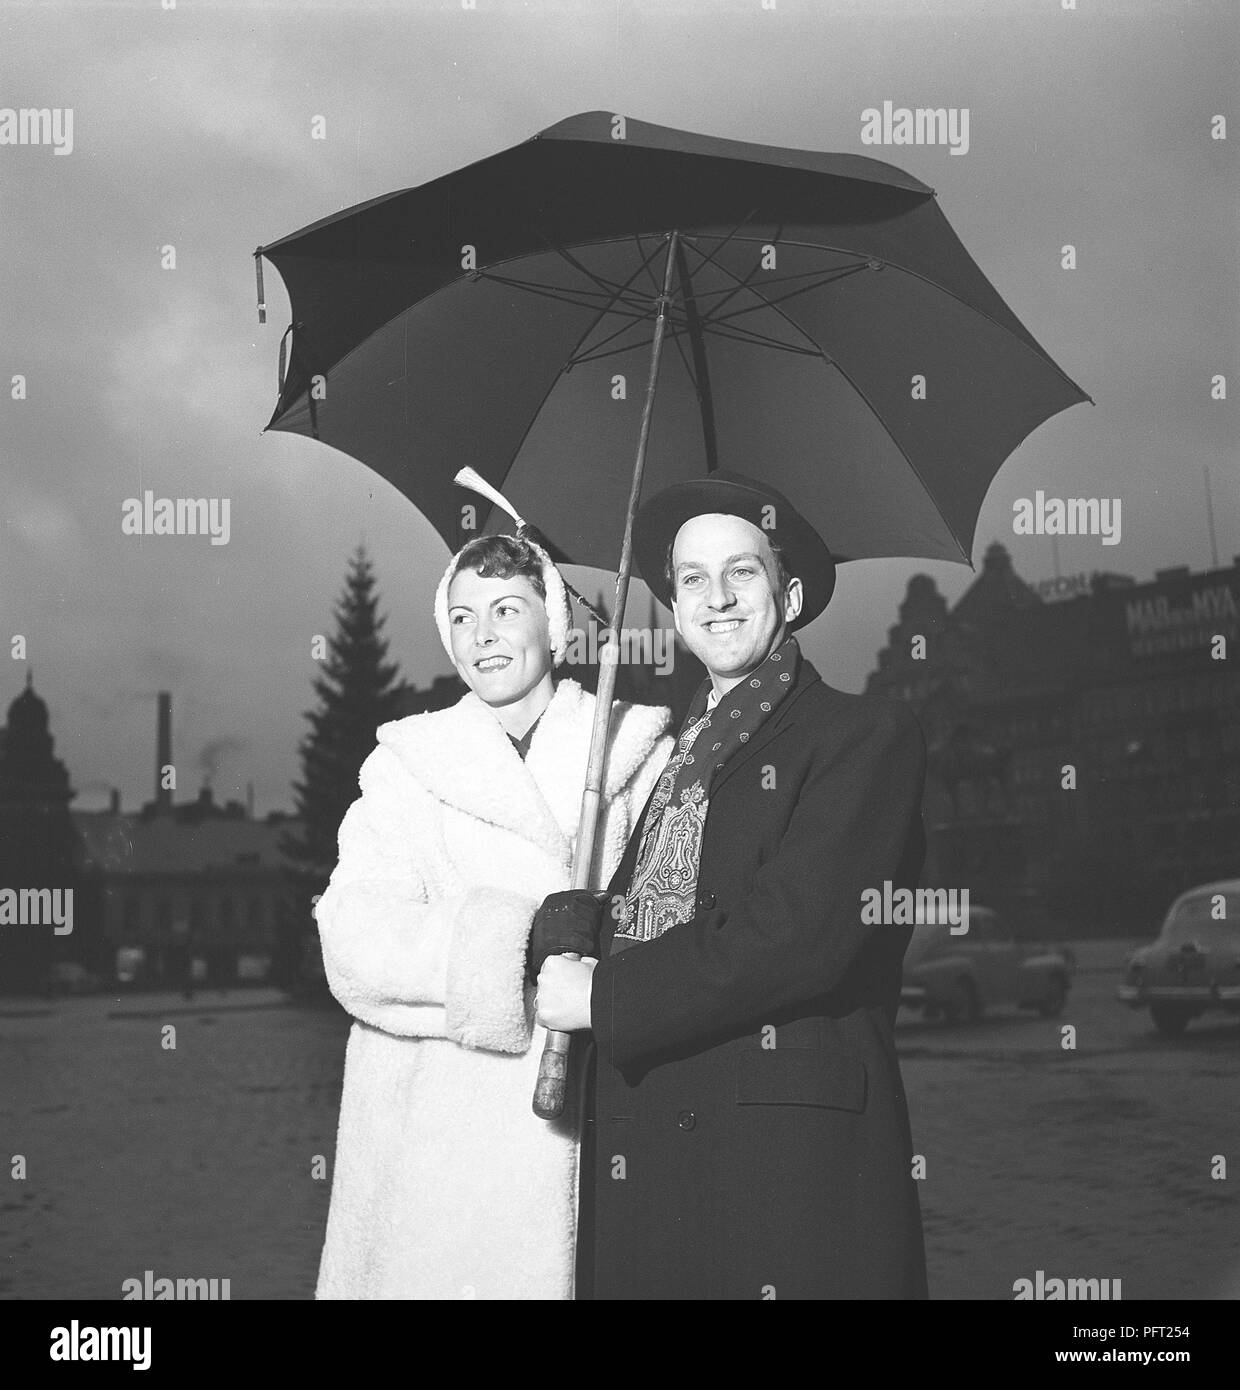 Années 50, couple. Un happy smiling couple est debout sous un parapluie un jour de pluie. ref BB11-5 Banque D'Images